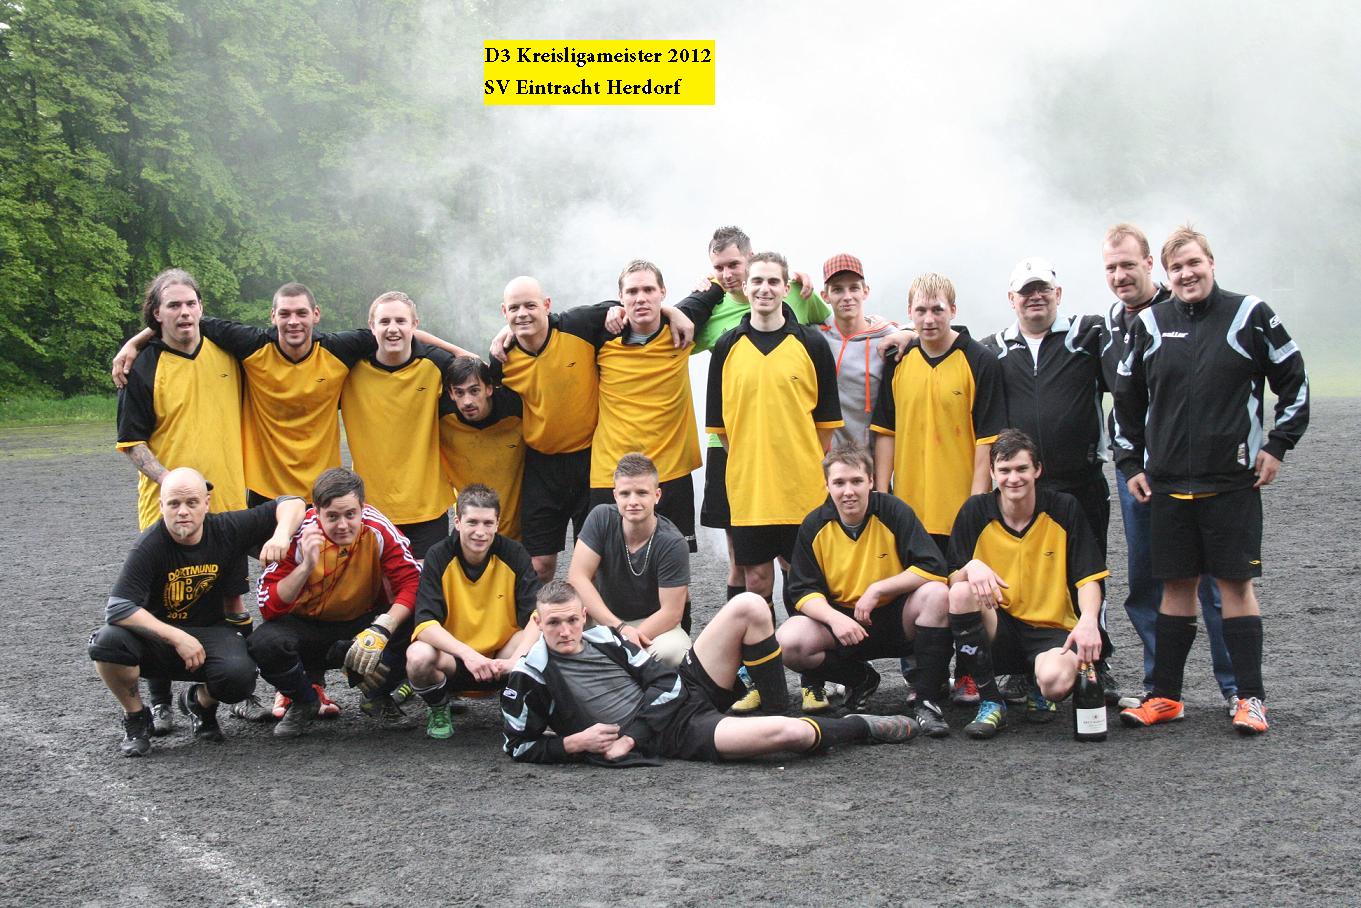 Mannschaftsfoto/Teamfoto von Eintracht Herdorf